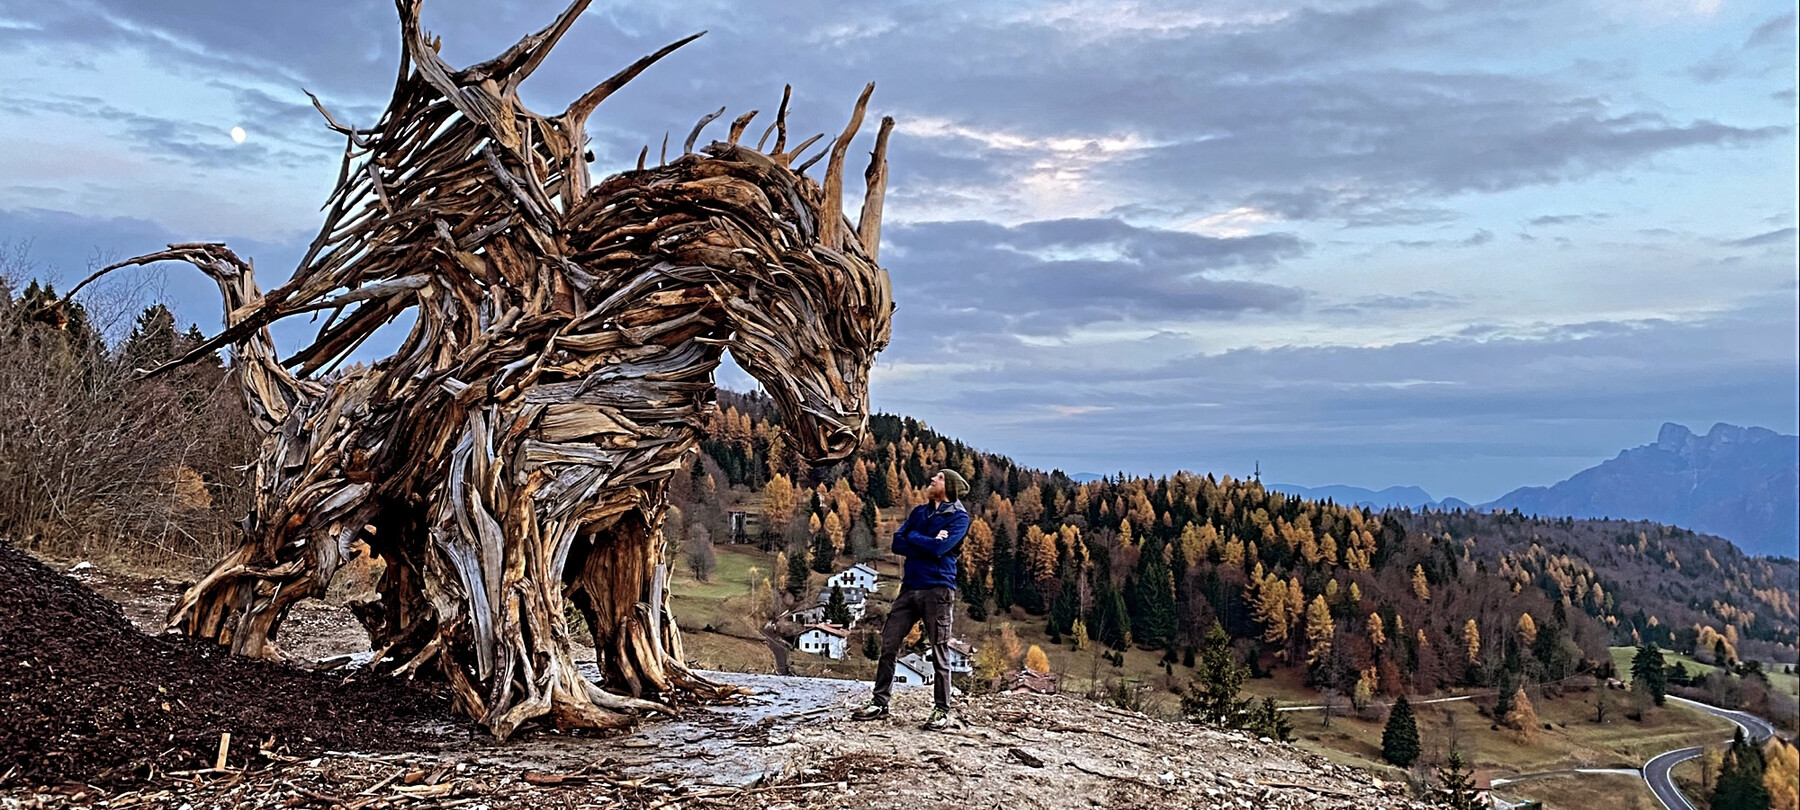 The Vaia Dragon, in Alpe Cimbra